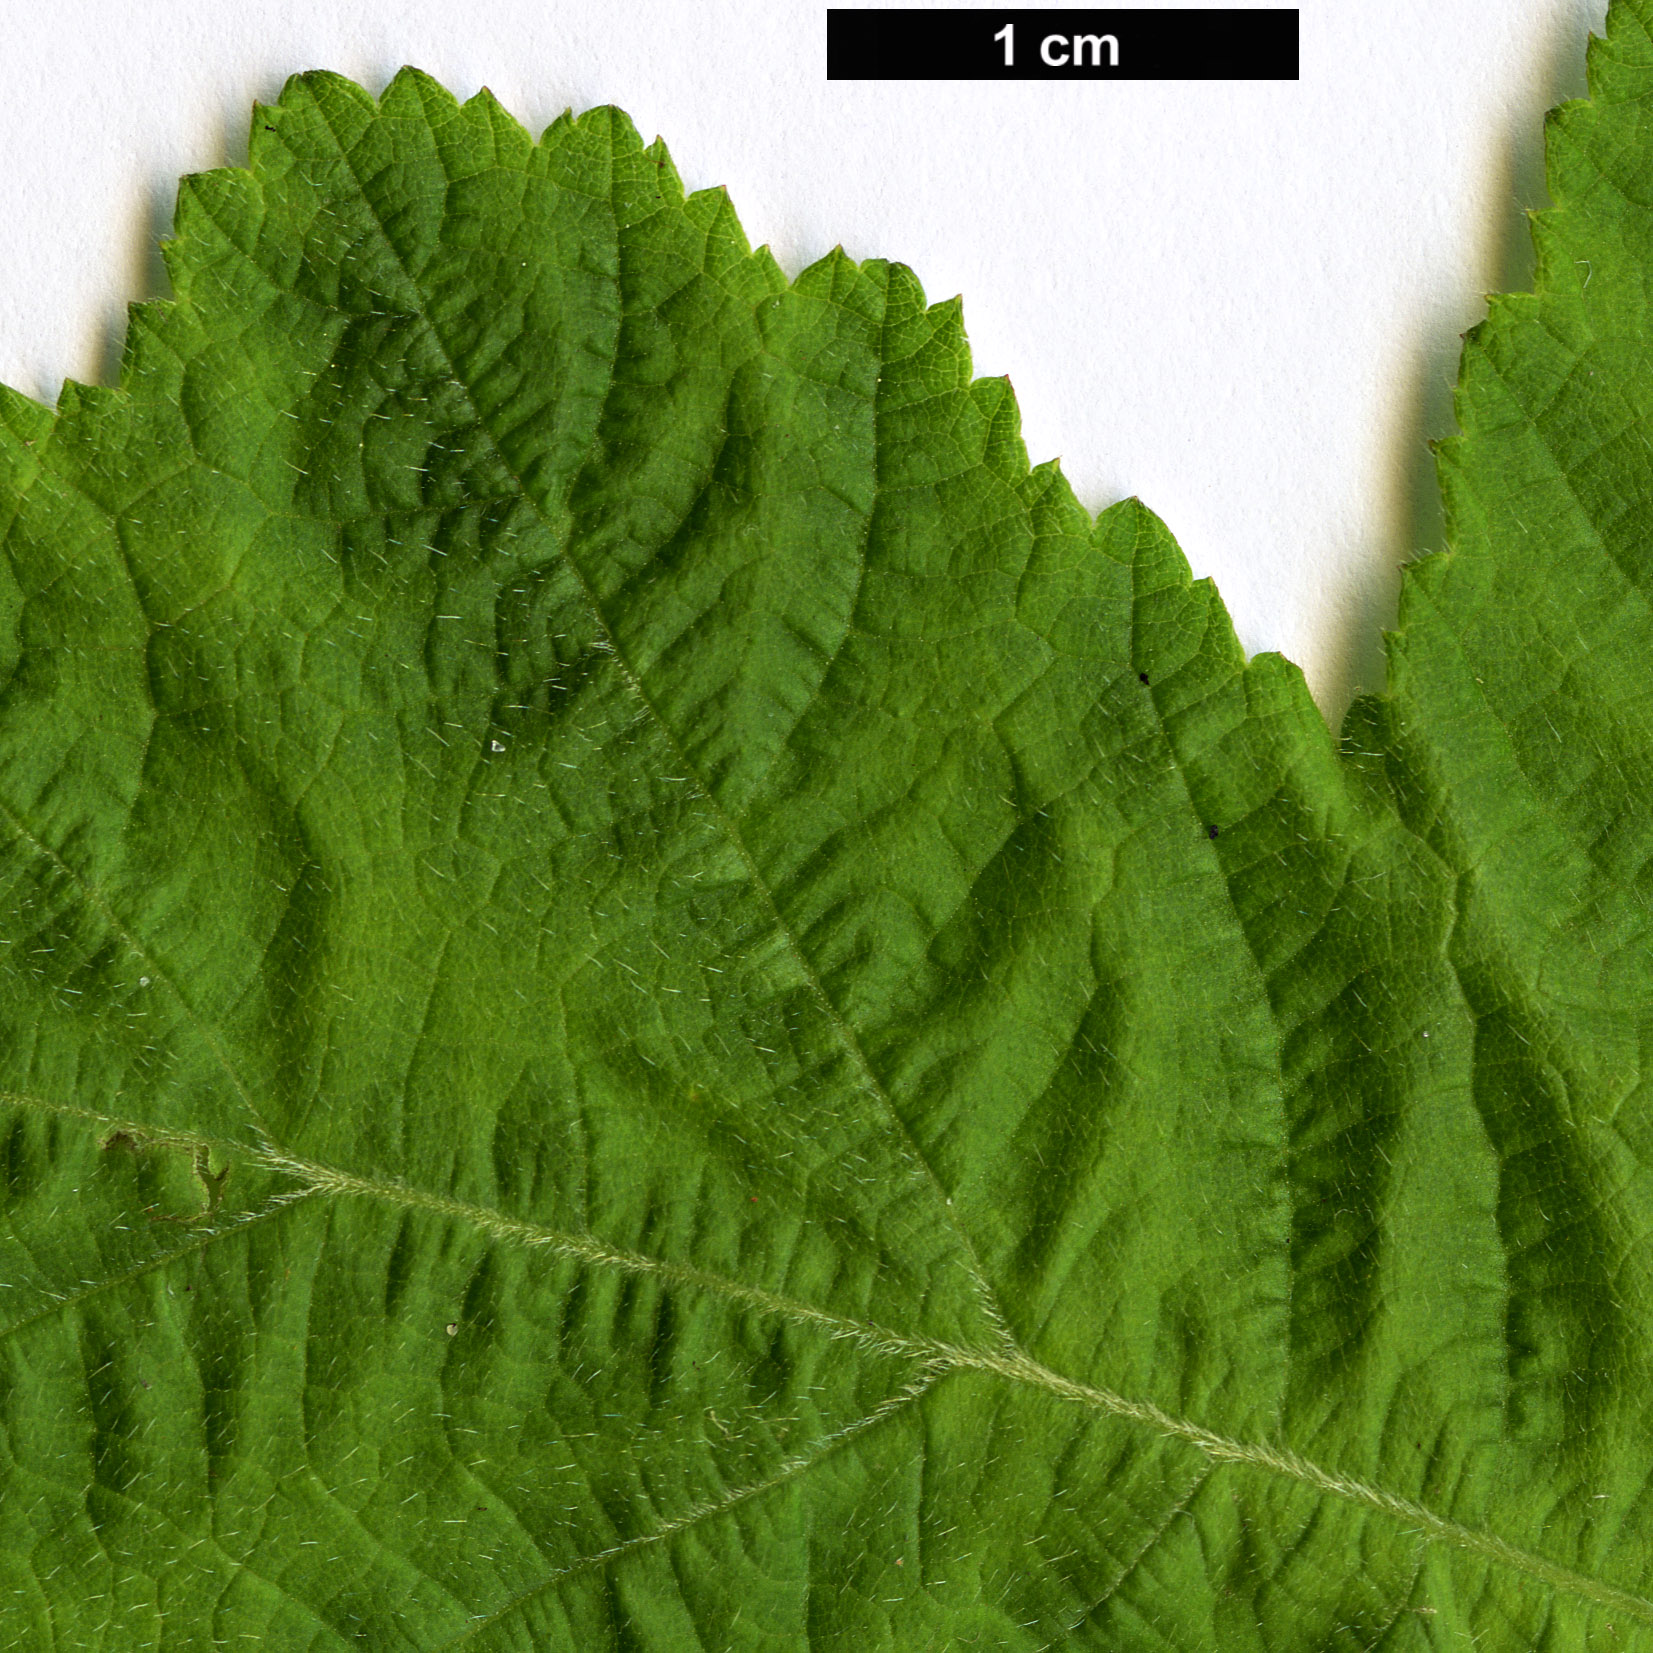 High resolution image: Family: Rosaceae - Genus: Rubus - Taxon: nagasawanus